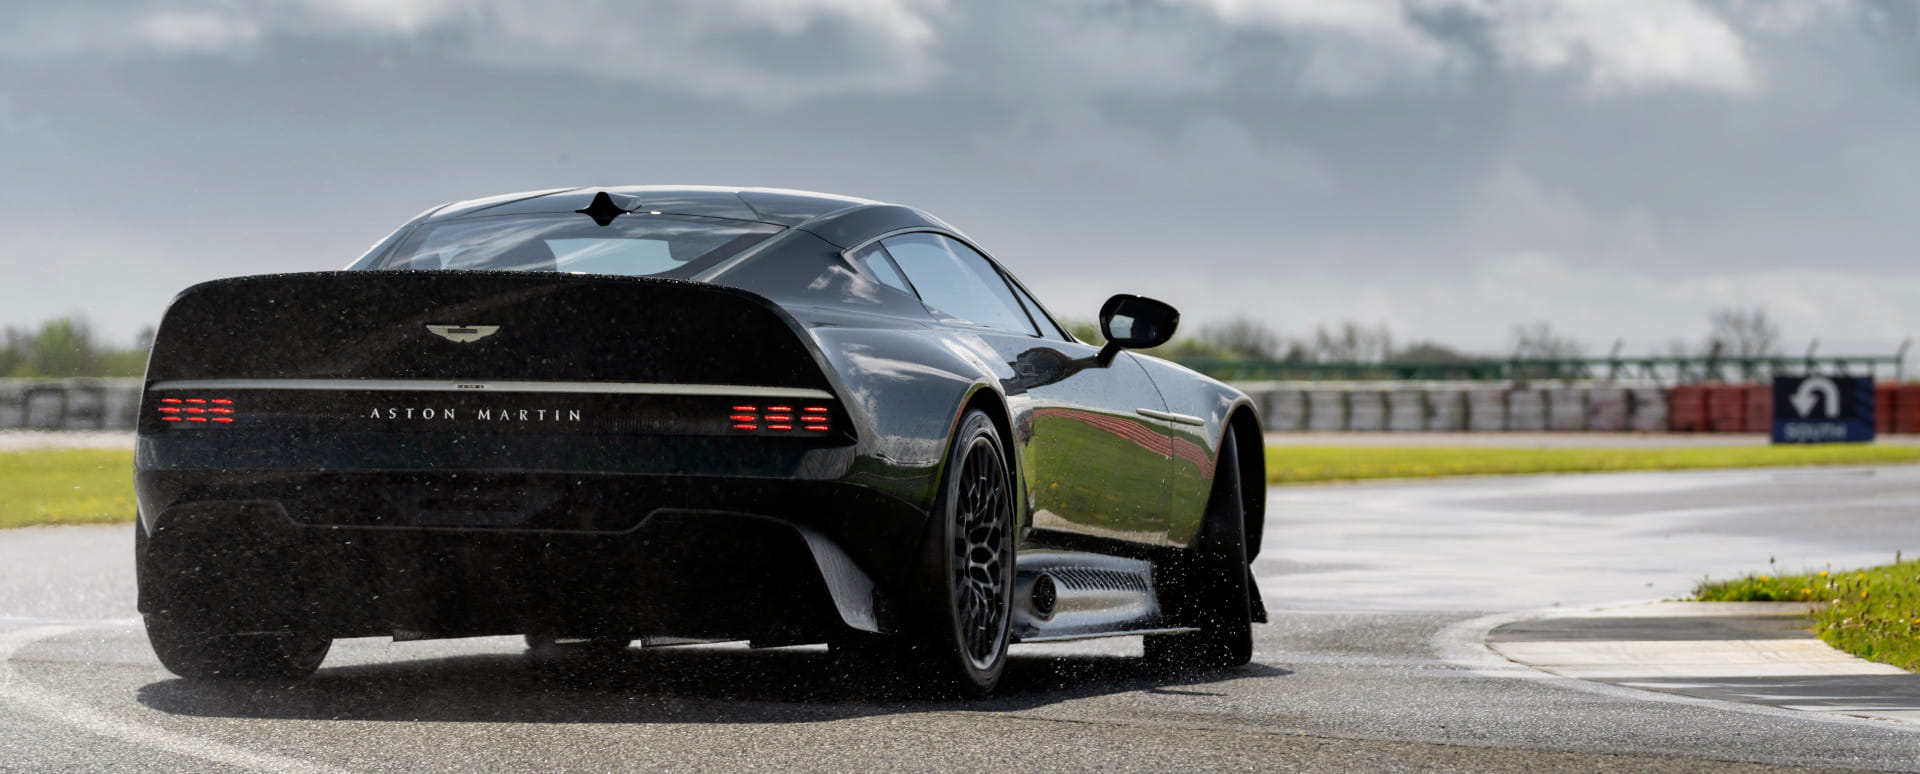 Aston Martin Victor Exterior Rear